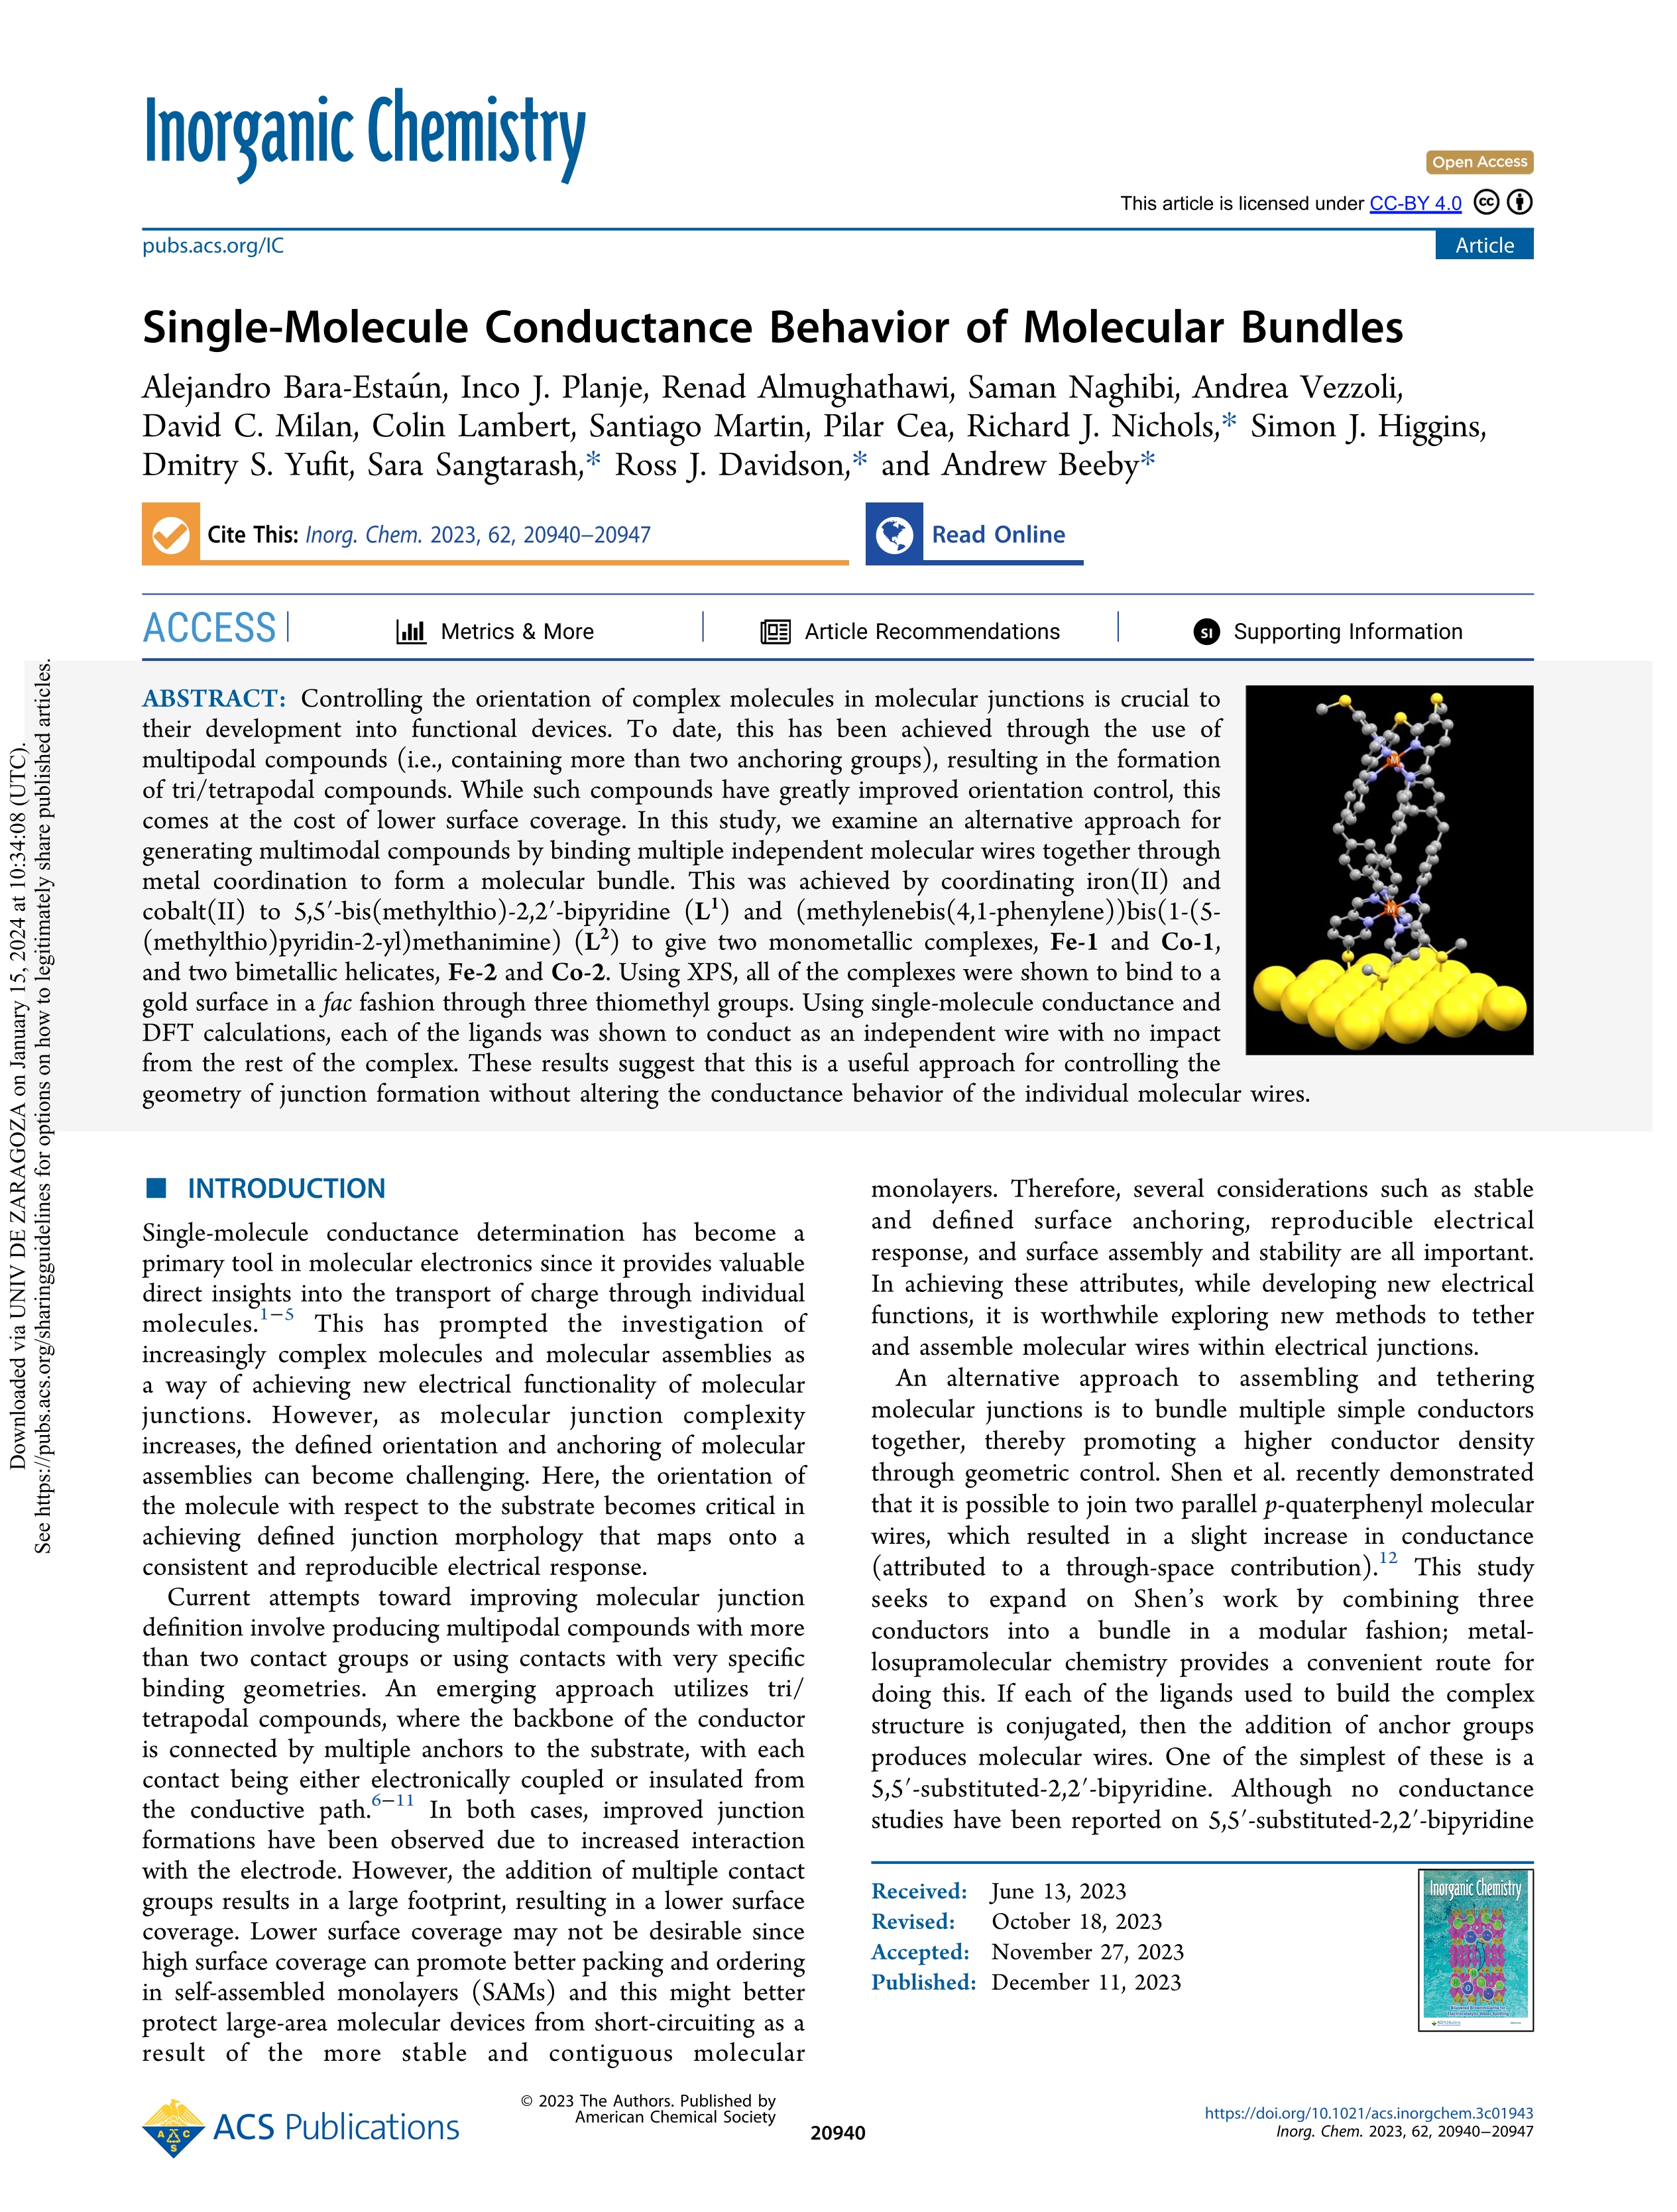 Single-molecule conductance behavior of molecular bundles